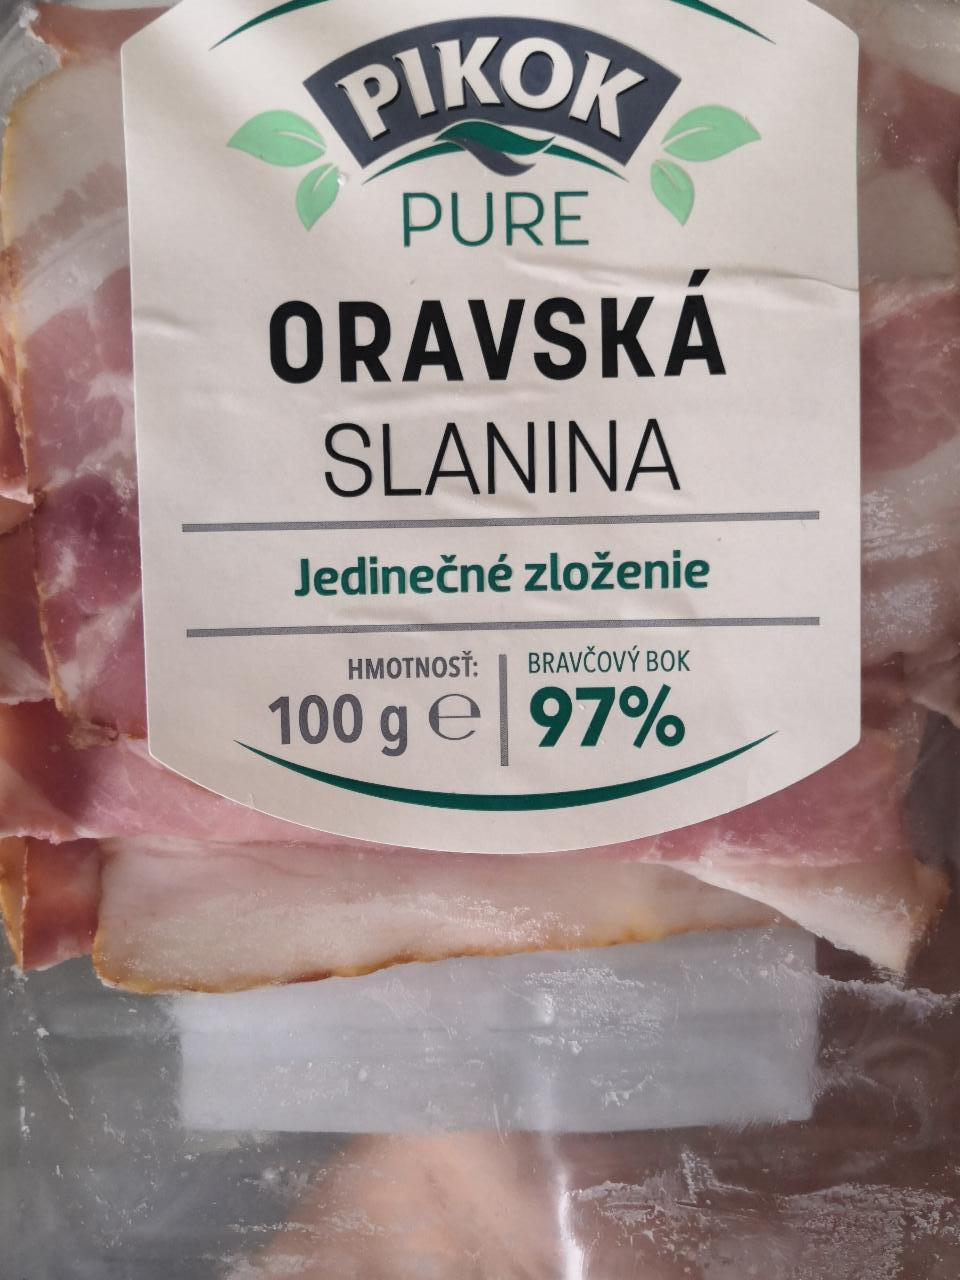 Fotografie - Oravská slanina 97% Pikok Pure